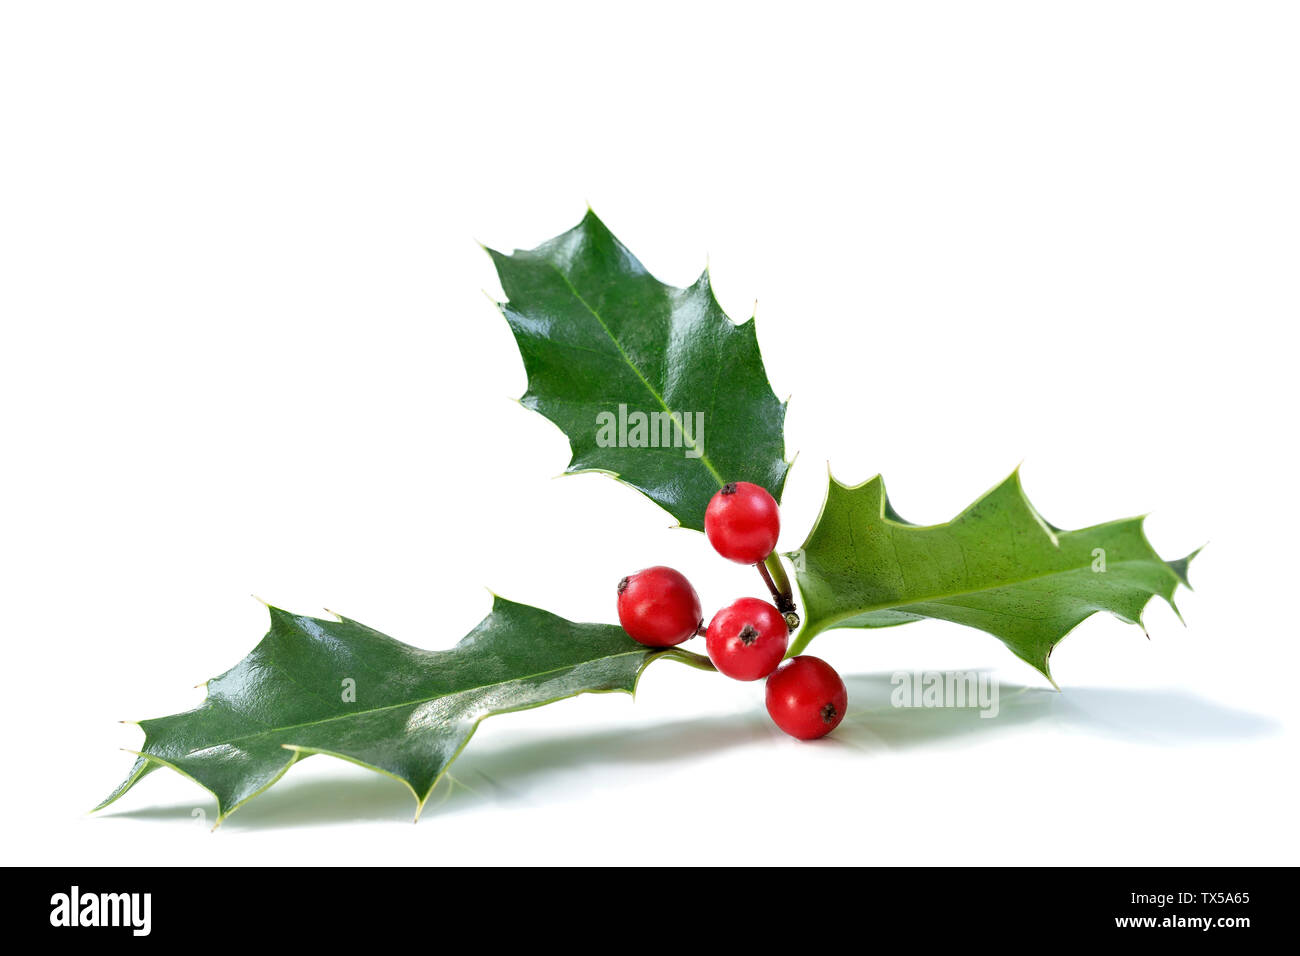 Houx de Noël avec les fruits rouges. Décoration de fête traditionnelle. Holly branche avec fruits rouges sur fond blanc Banque D'Images